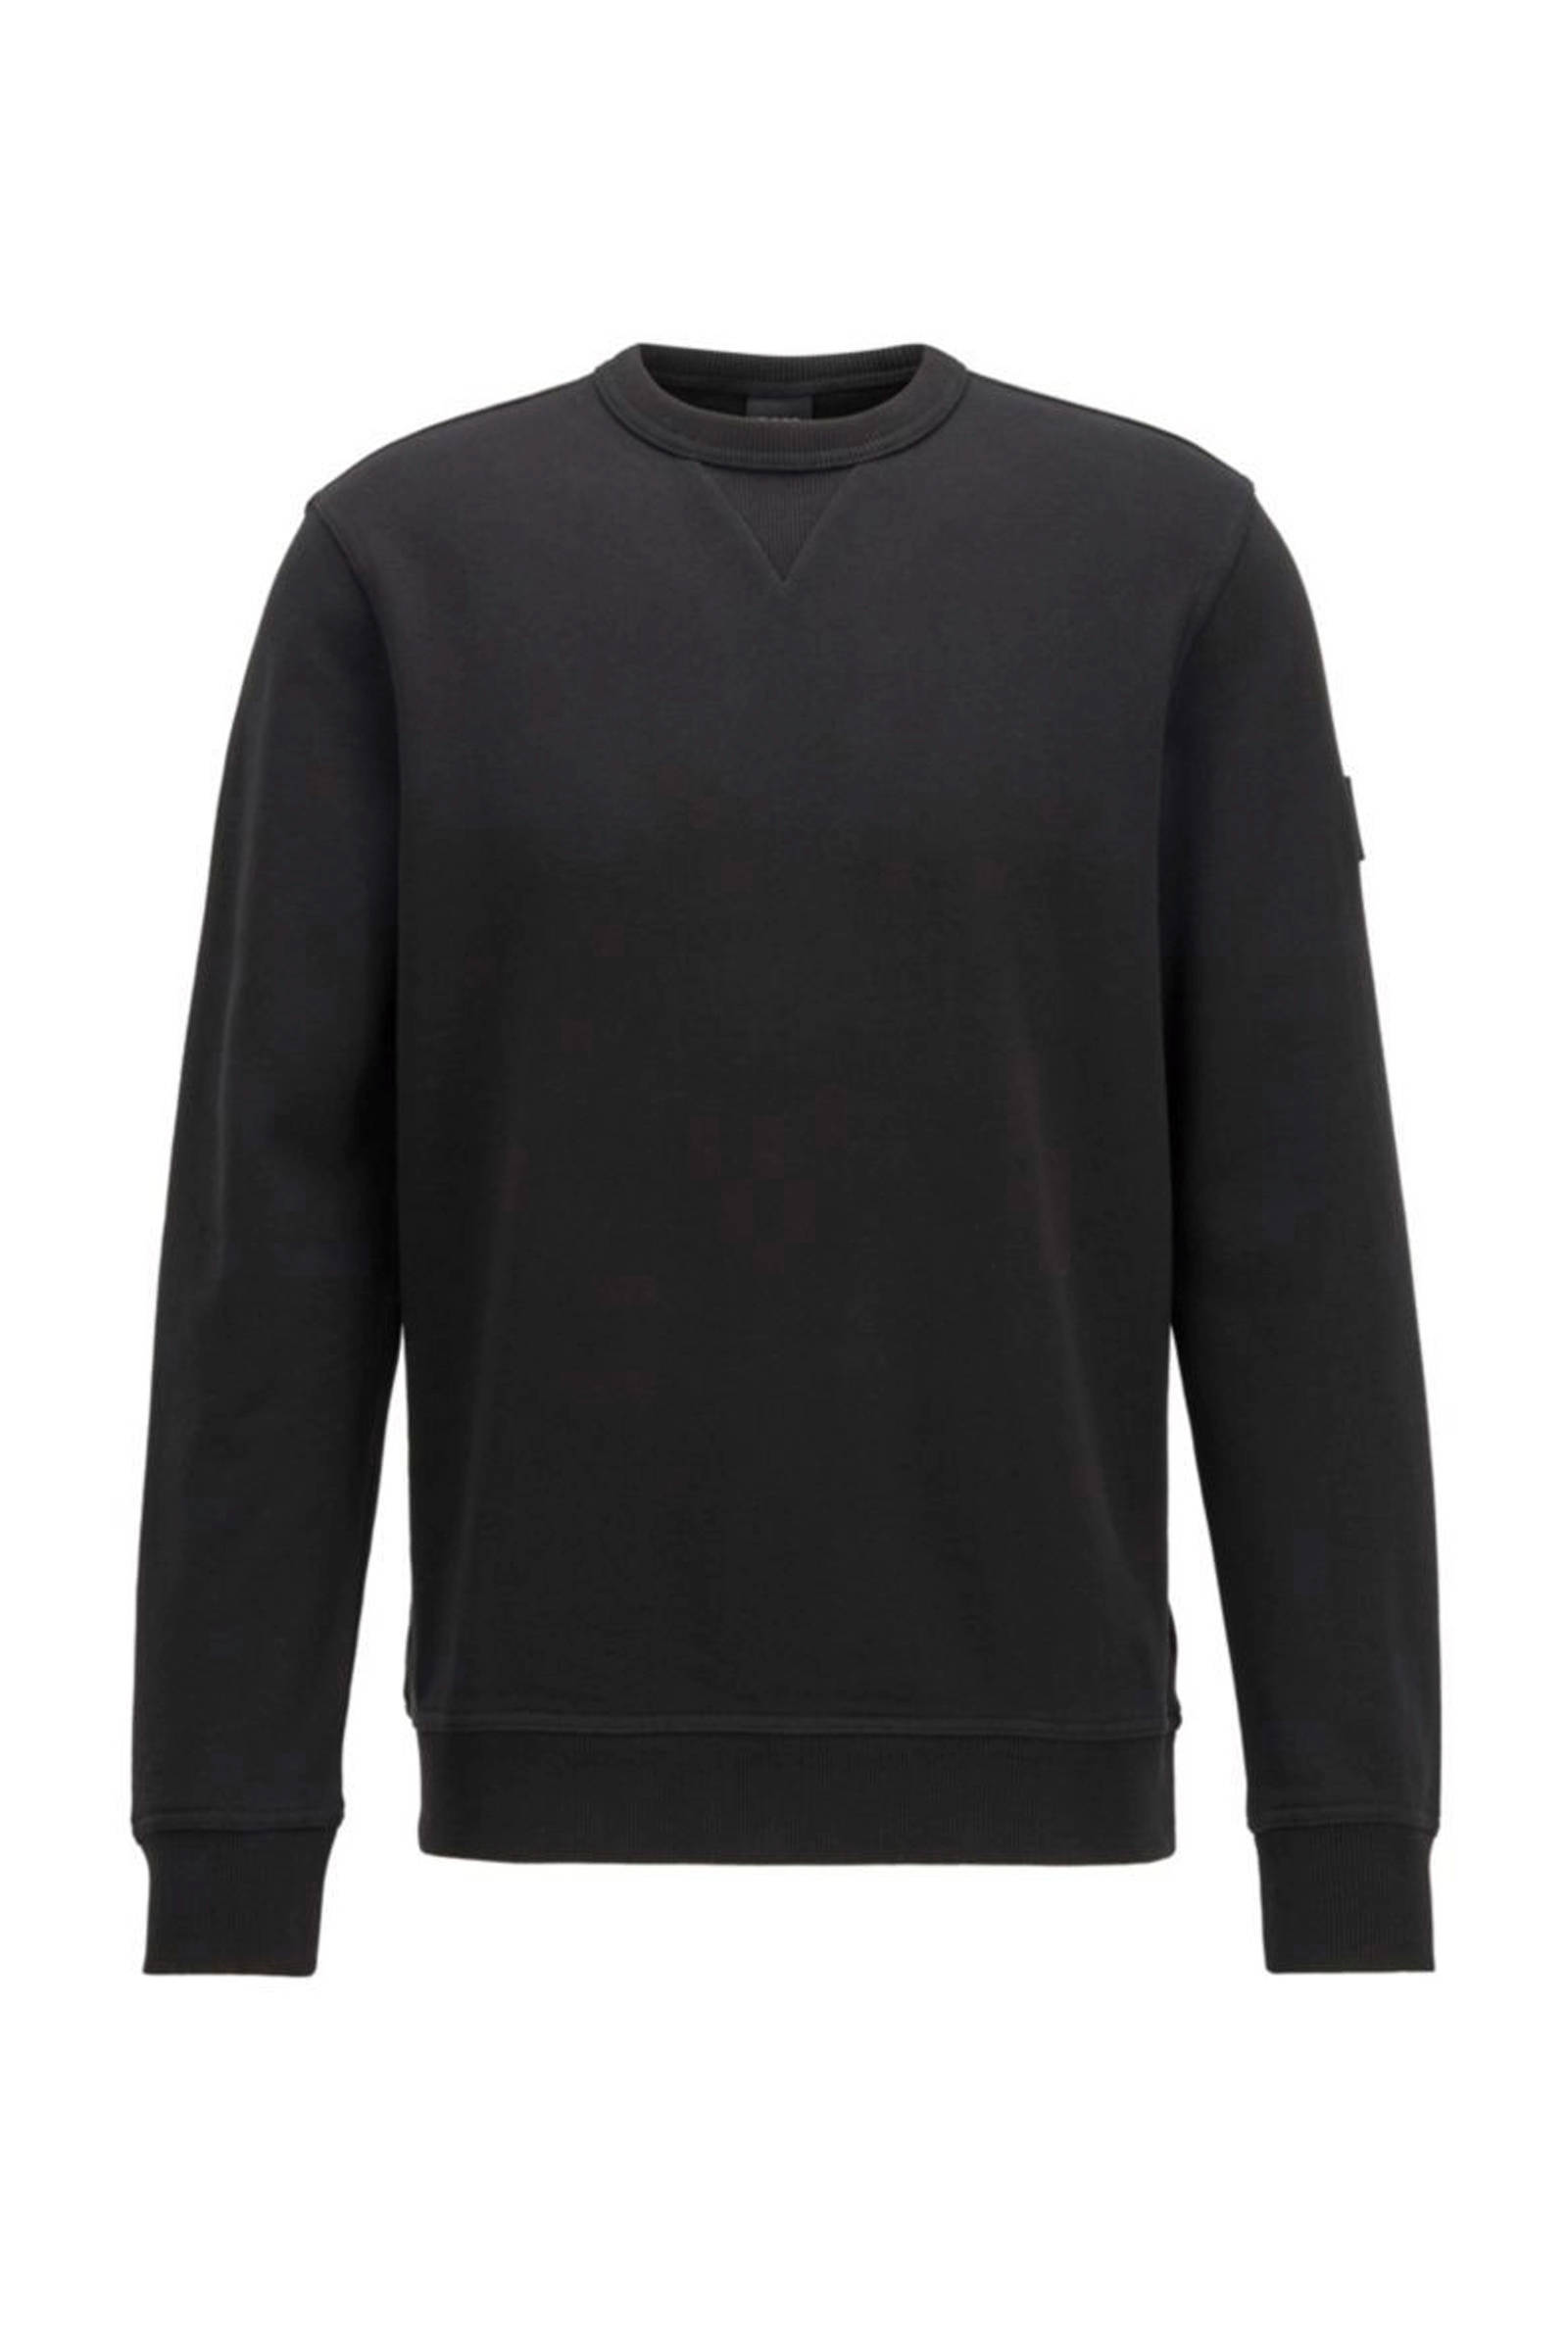 Hugo Boss trui zwart ronde hals model Walkup online kopen